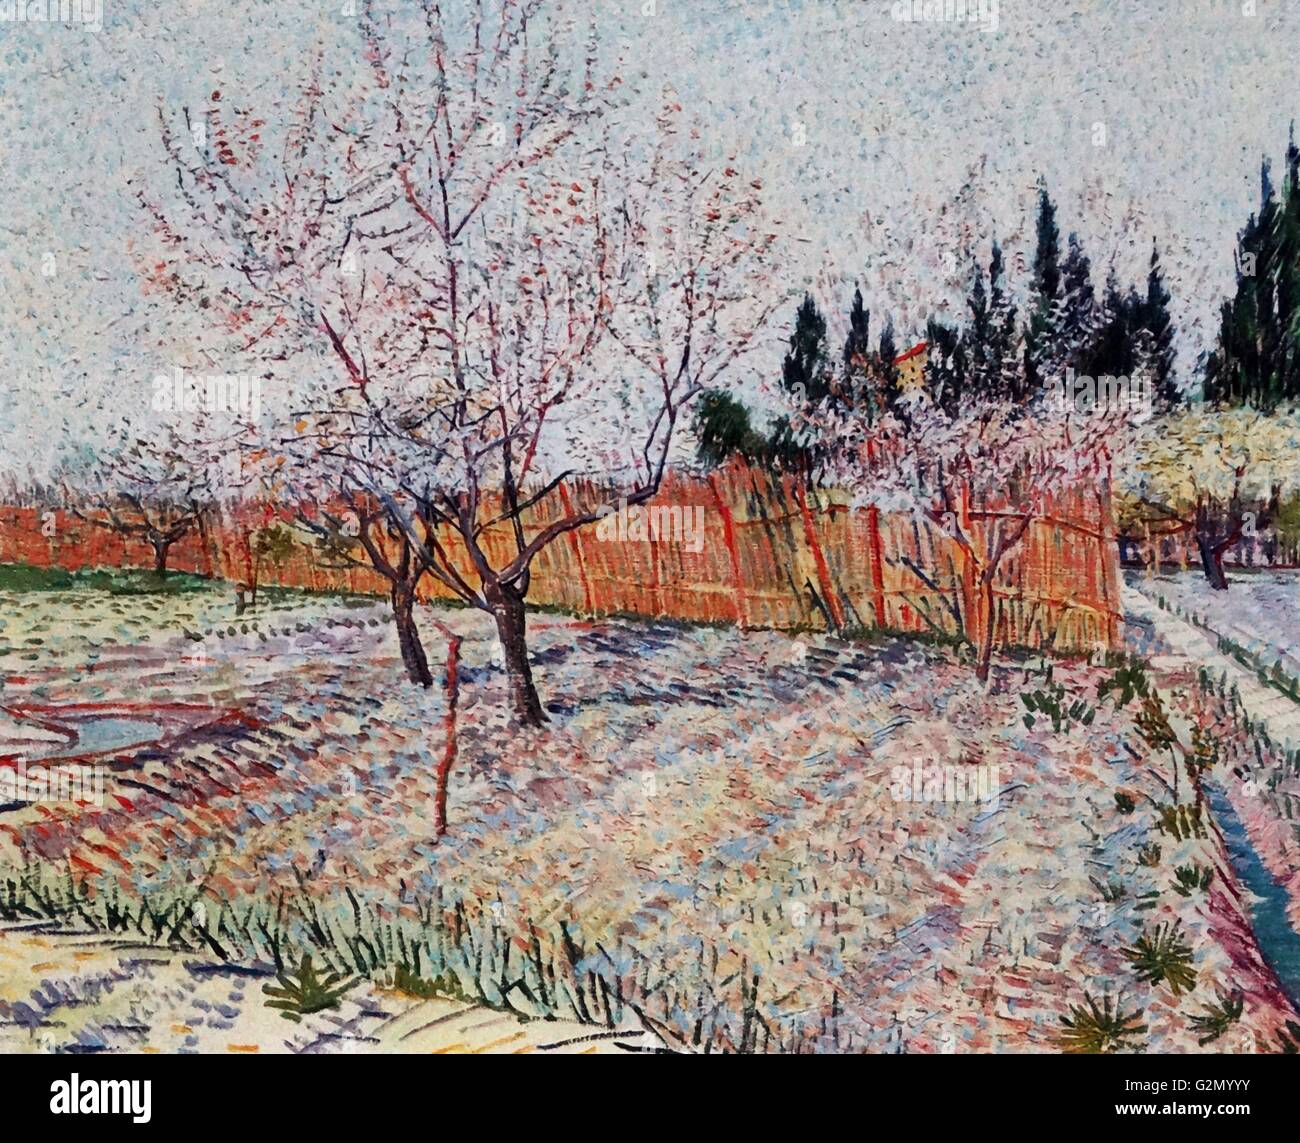 Pintada por el famoso artista holandés Vincent Van Gogh (30 de marzo de 1853 - 29 de julio de 1890), el trabajo titulado 'el huerto con el florecimiento de durazno". Terminado en 1888. Foto de stock